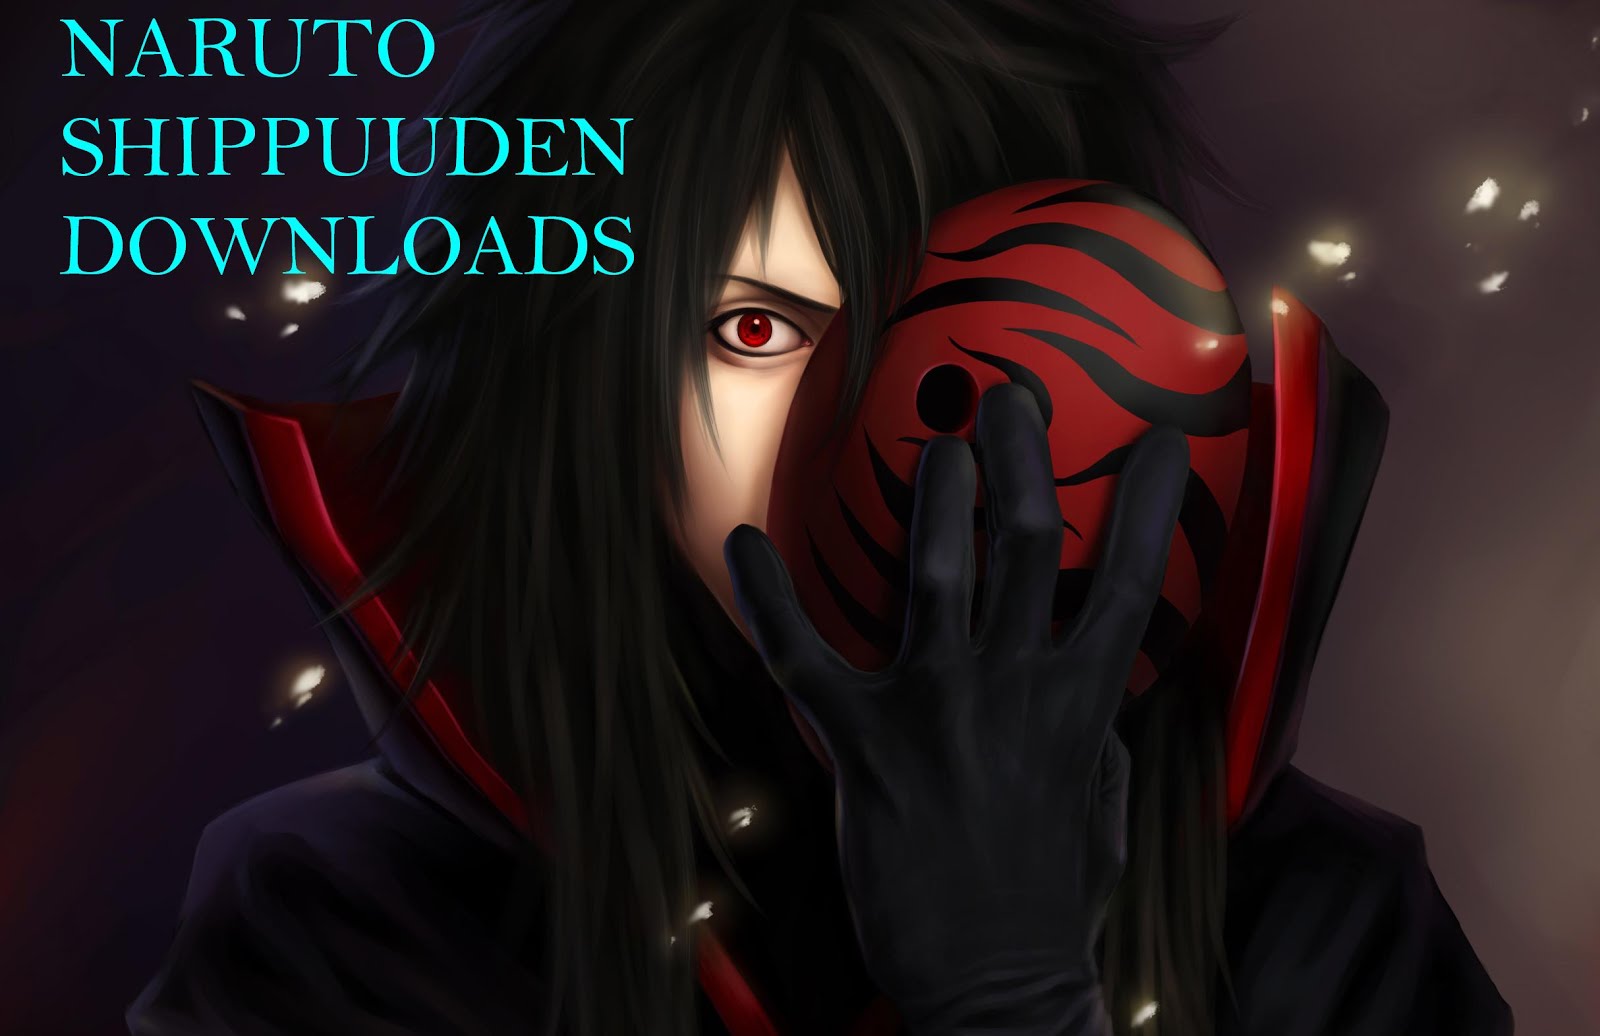 Naruto Shippuden Downloads